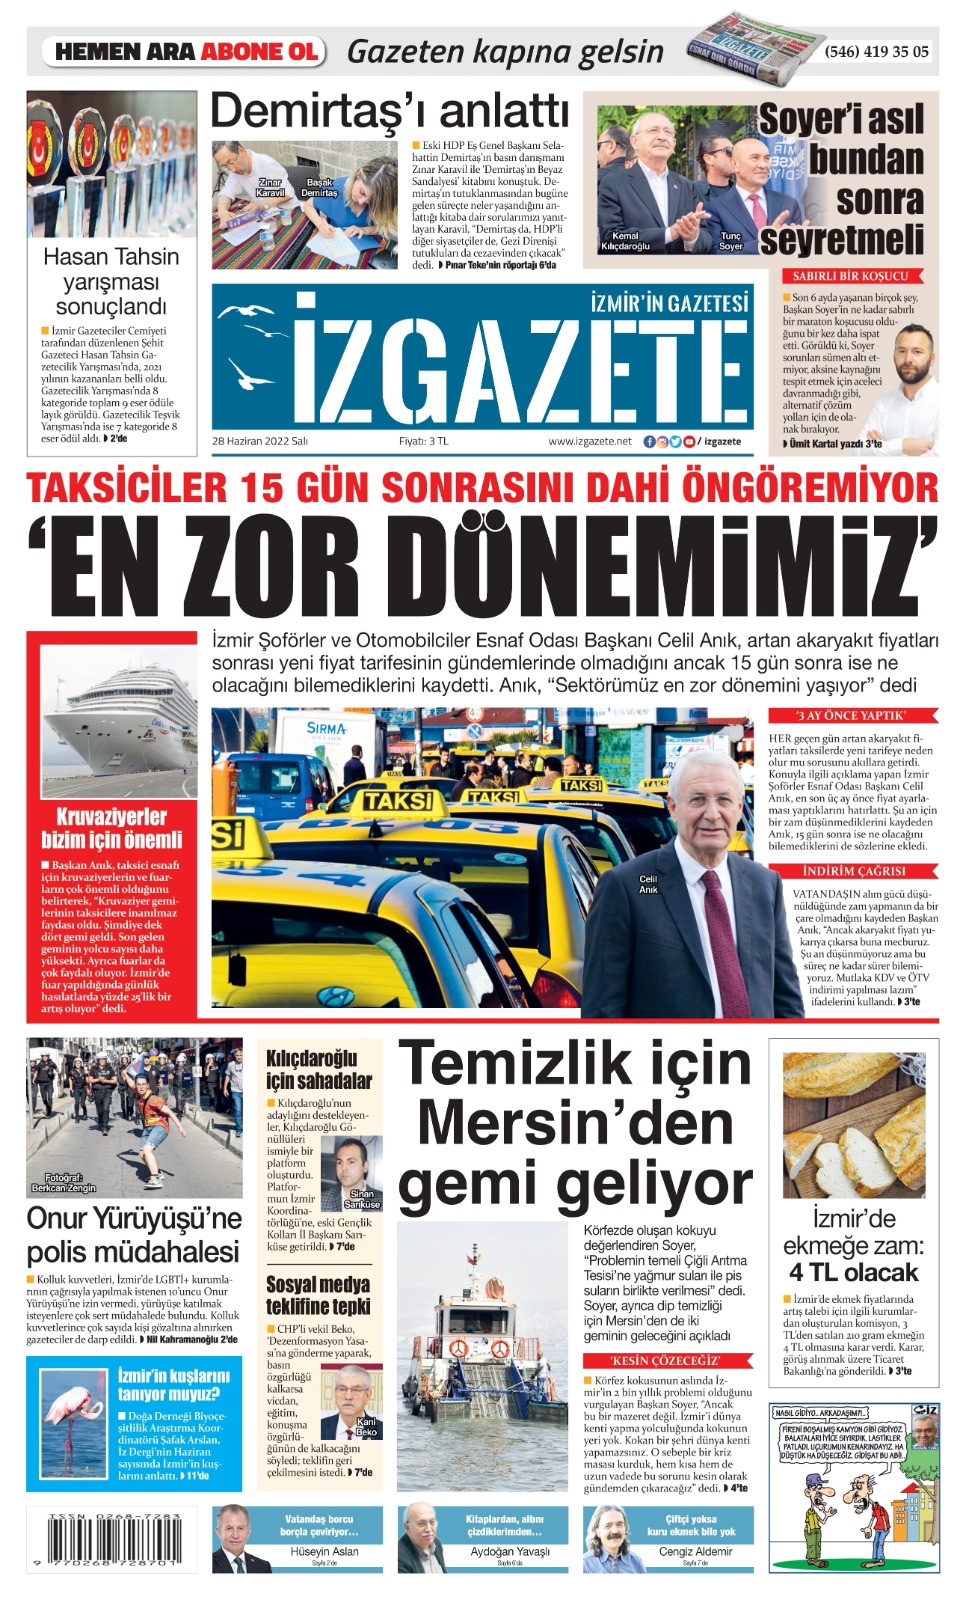 İz Gazete - İzmir'in Gazetesi - 28.06.2022 Manşeti